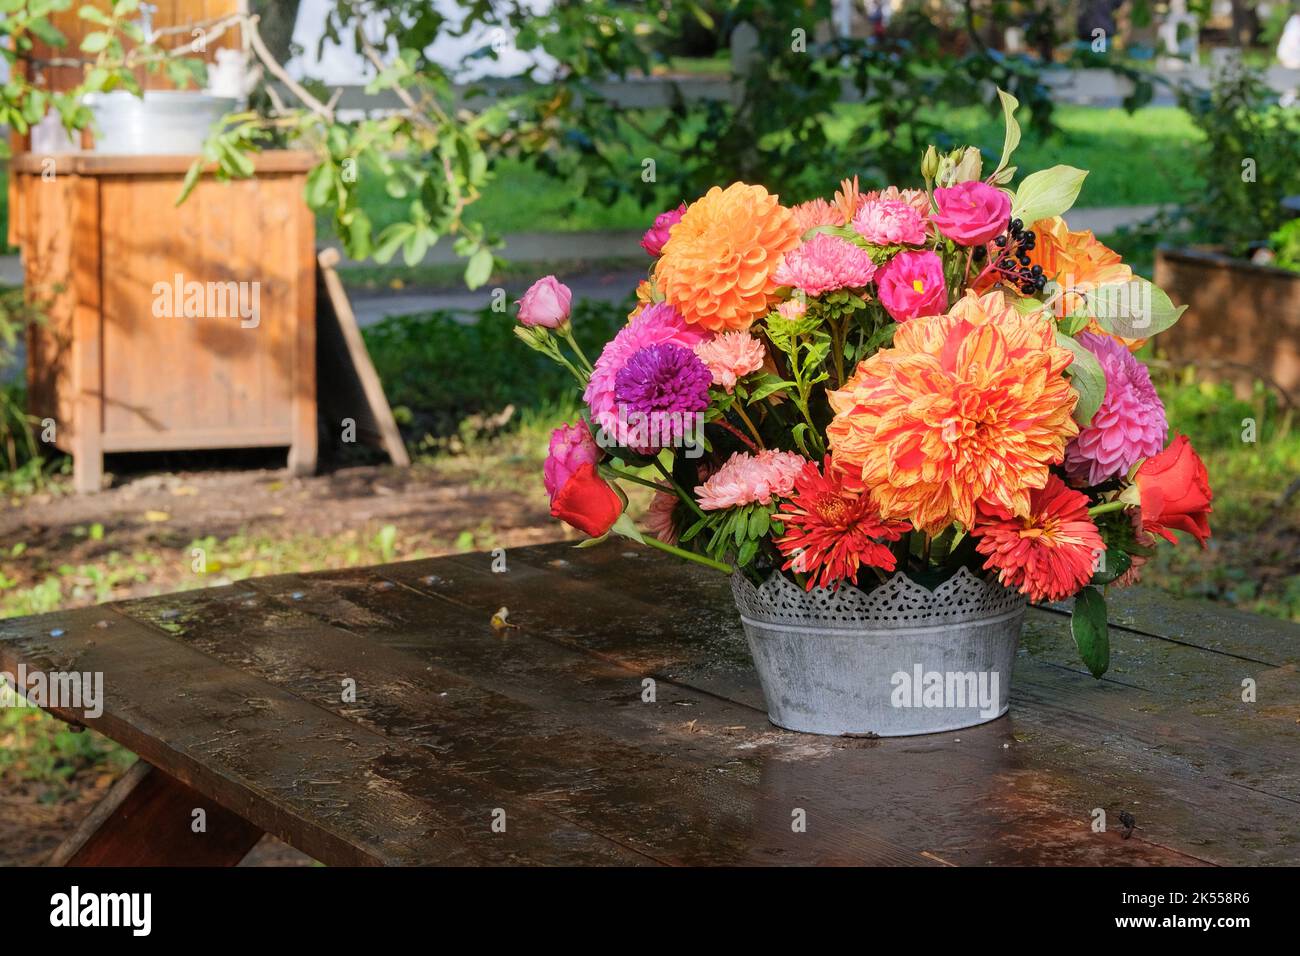 Herbstblumen: rosen, Aster, Dahilie im Garten auf einem Holztisch. Floristisches Design. Sonniger Tag. Stockfoto